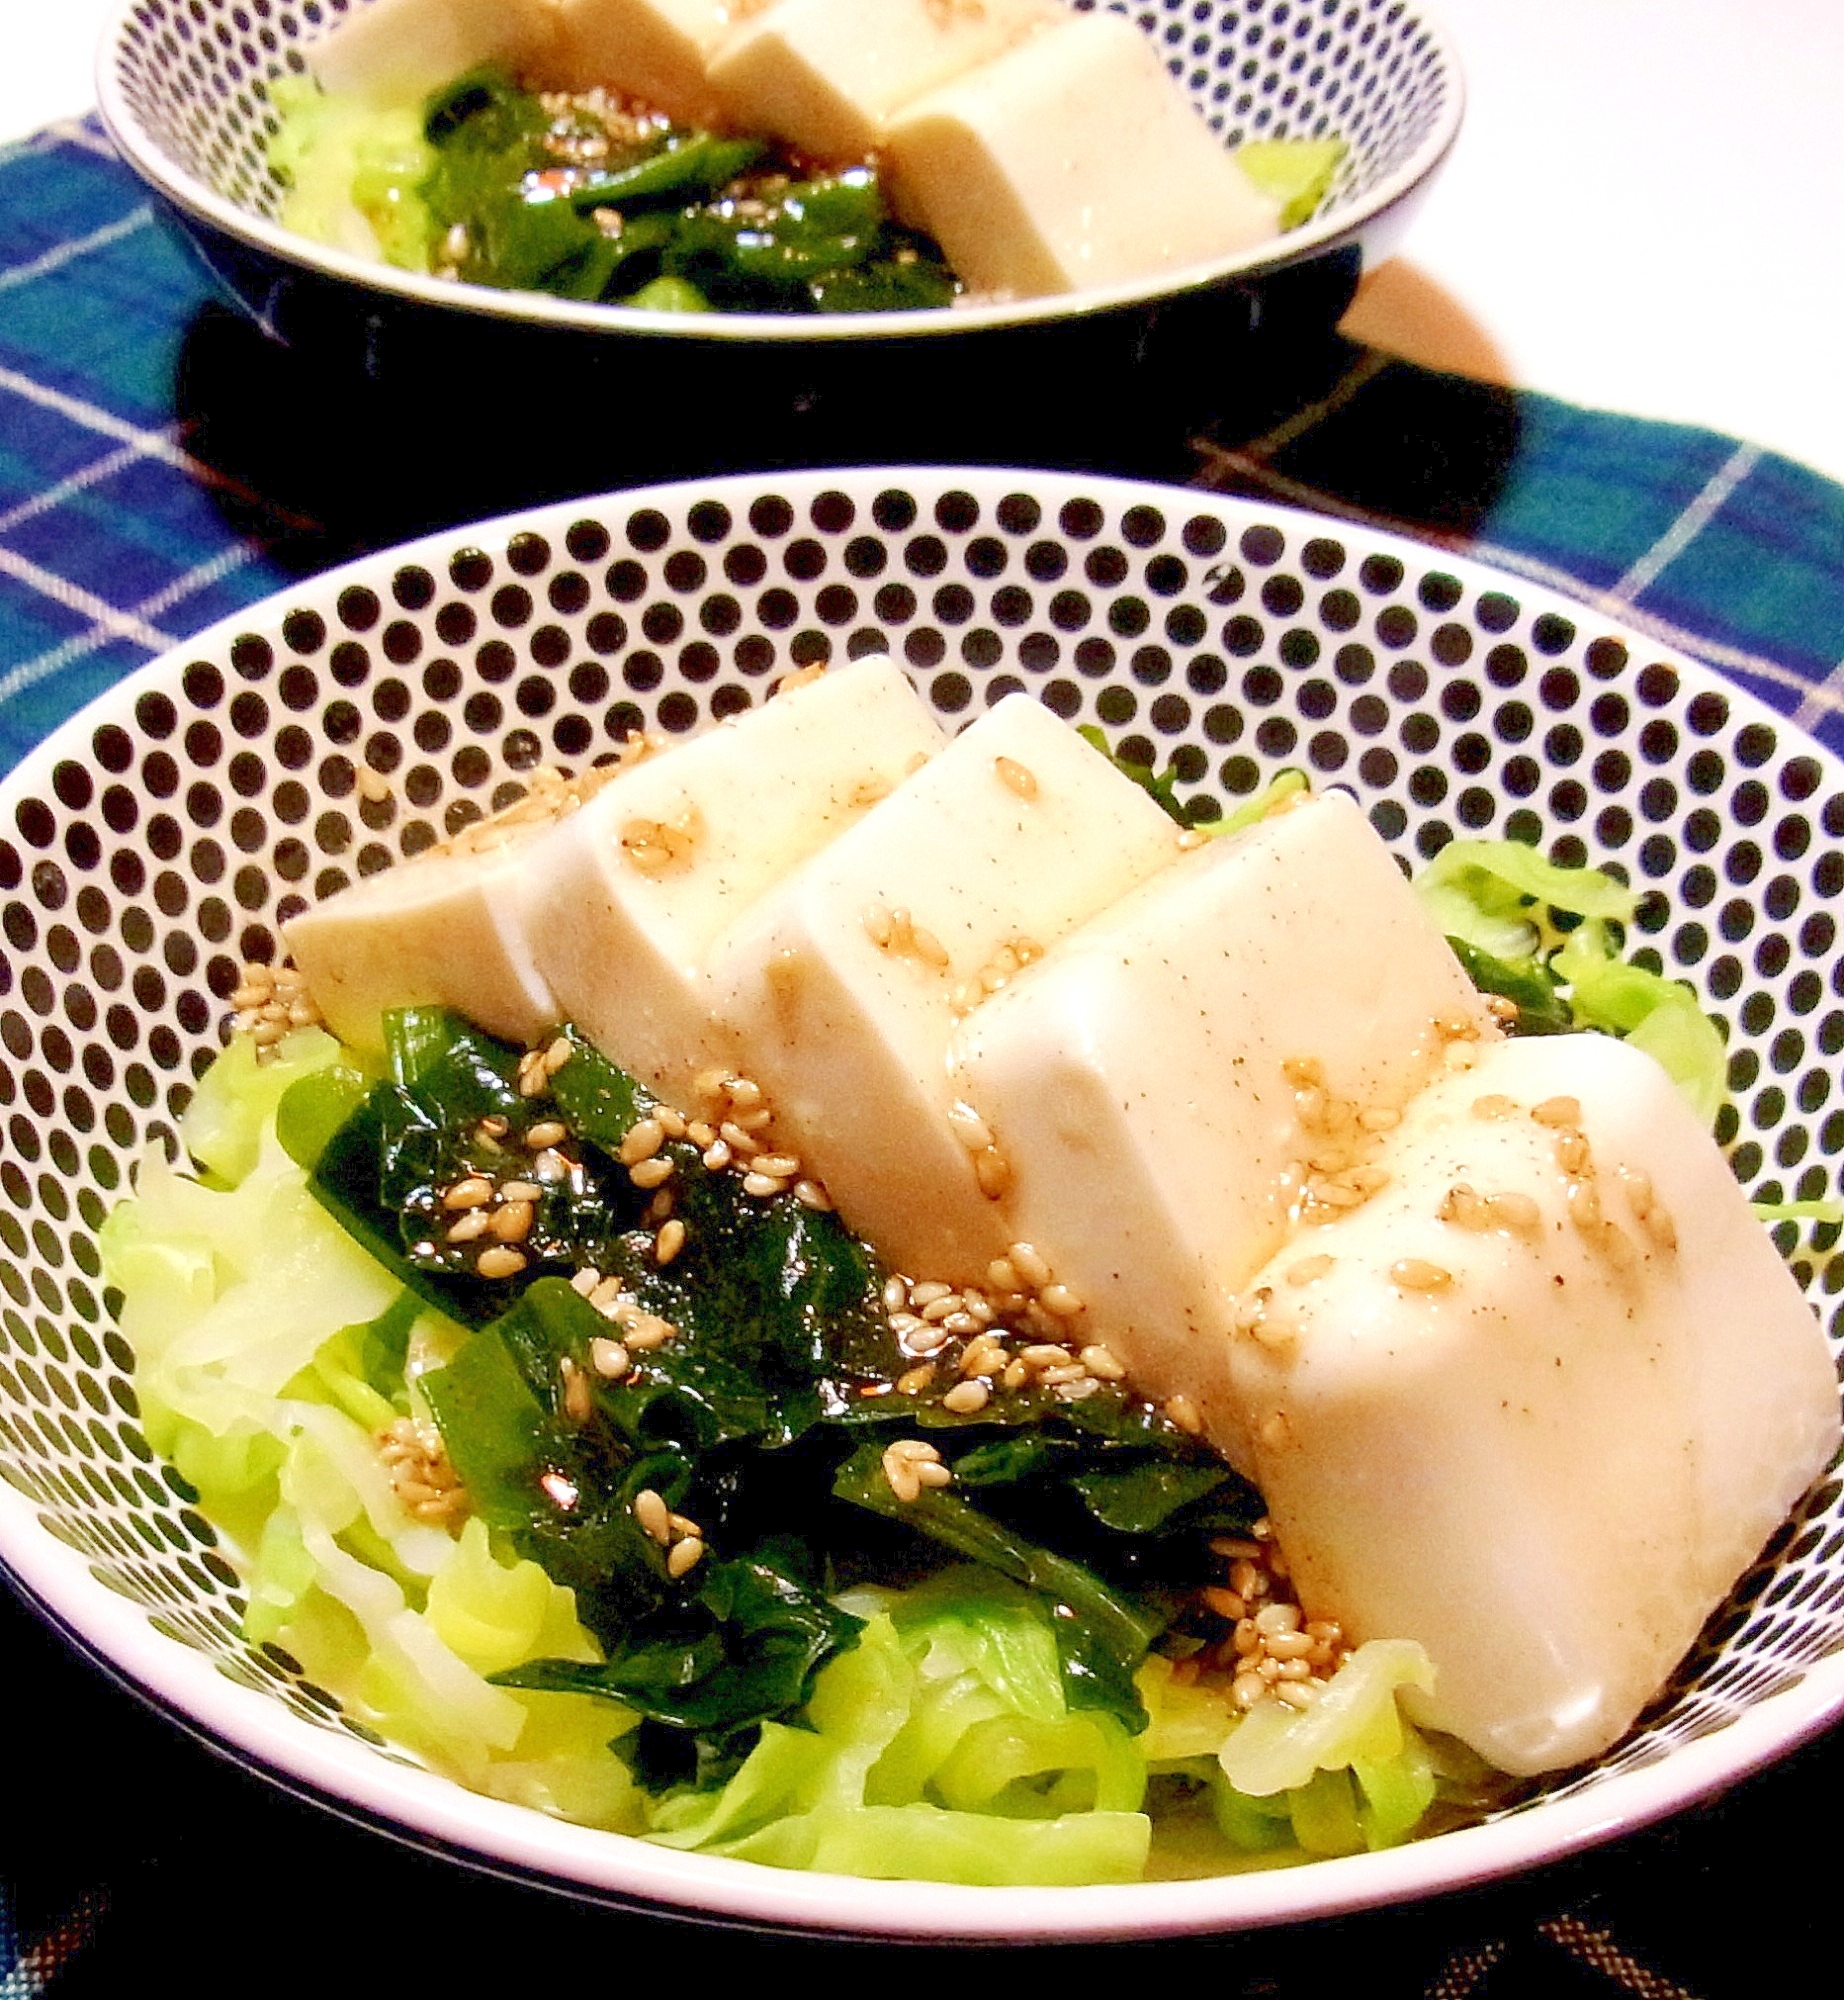 豆腐とキャベツのサラダ